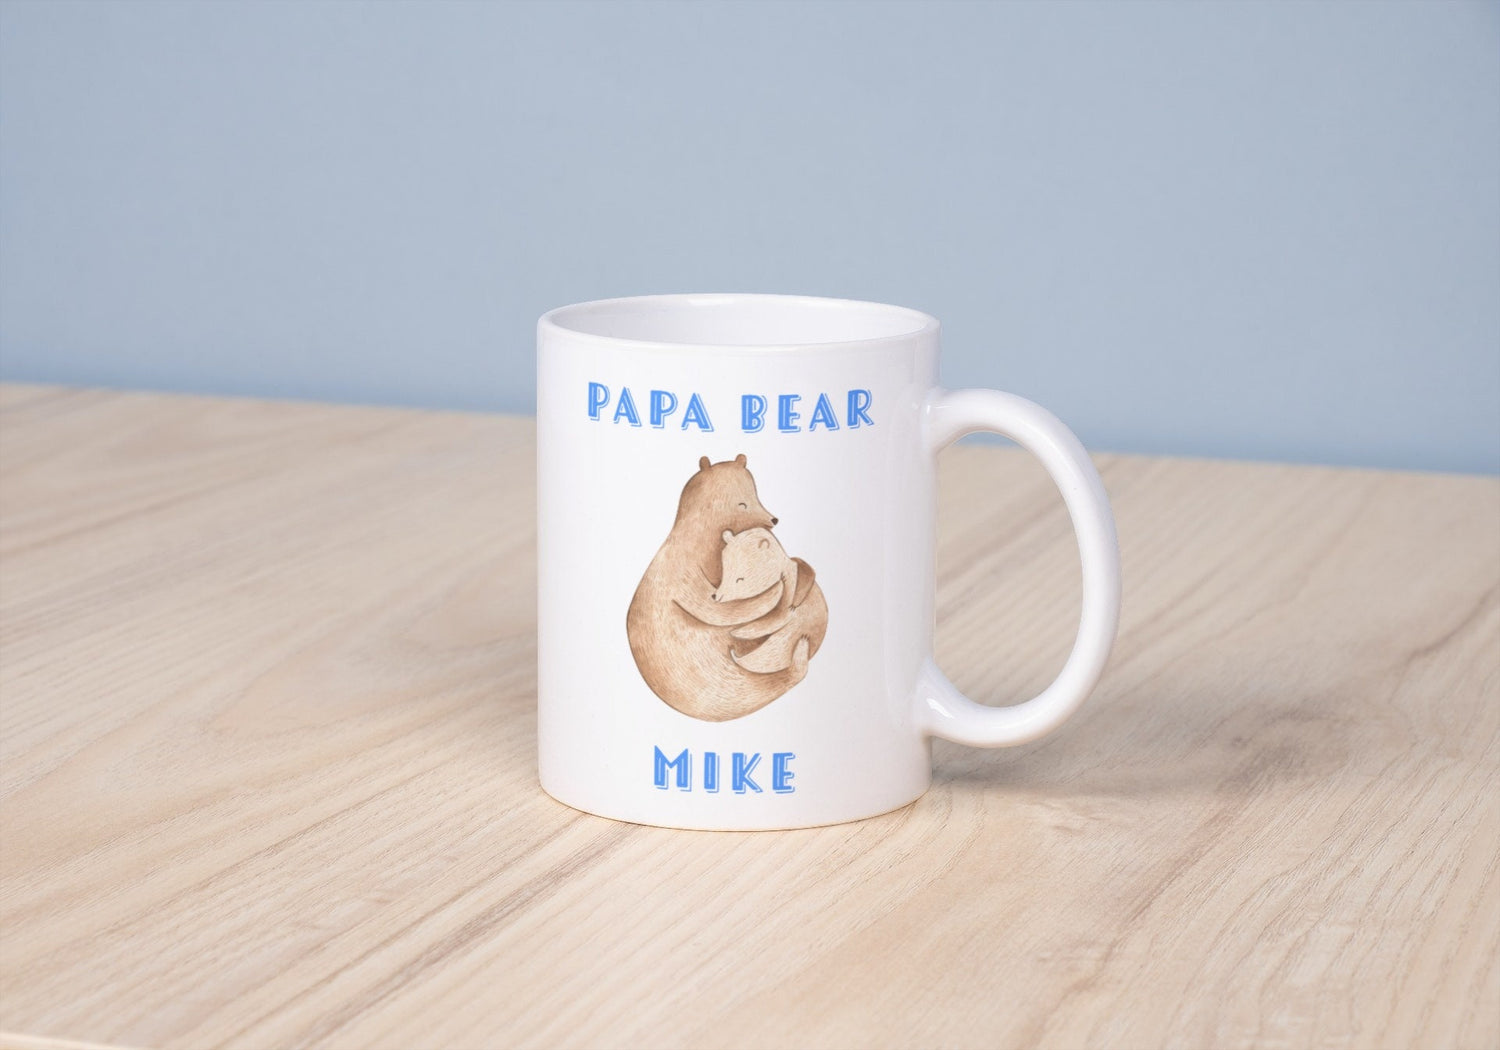 il-Papa' Mug 